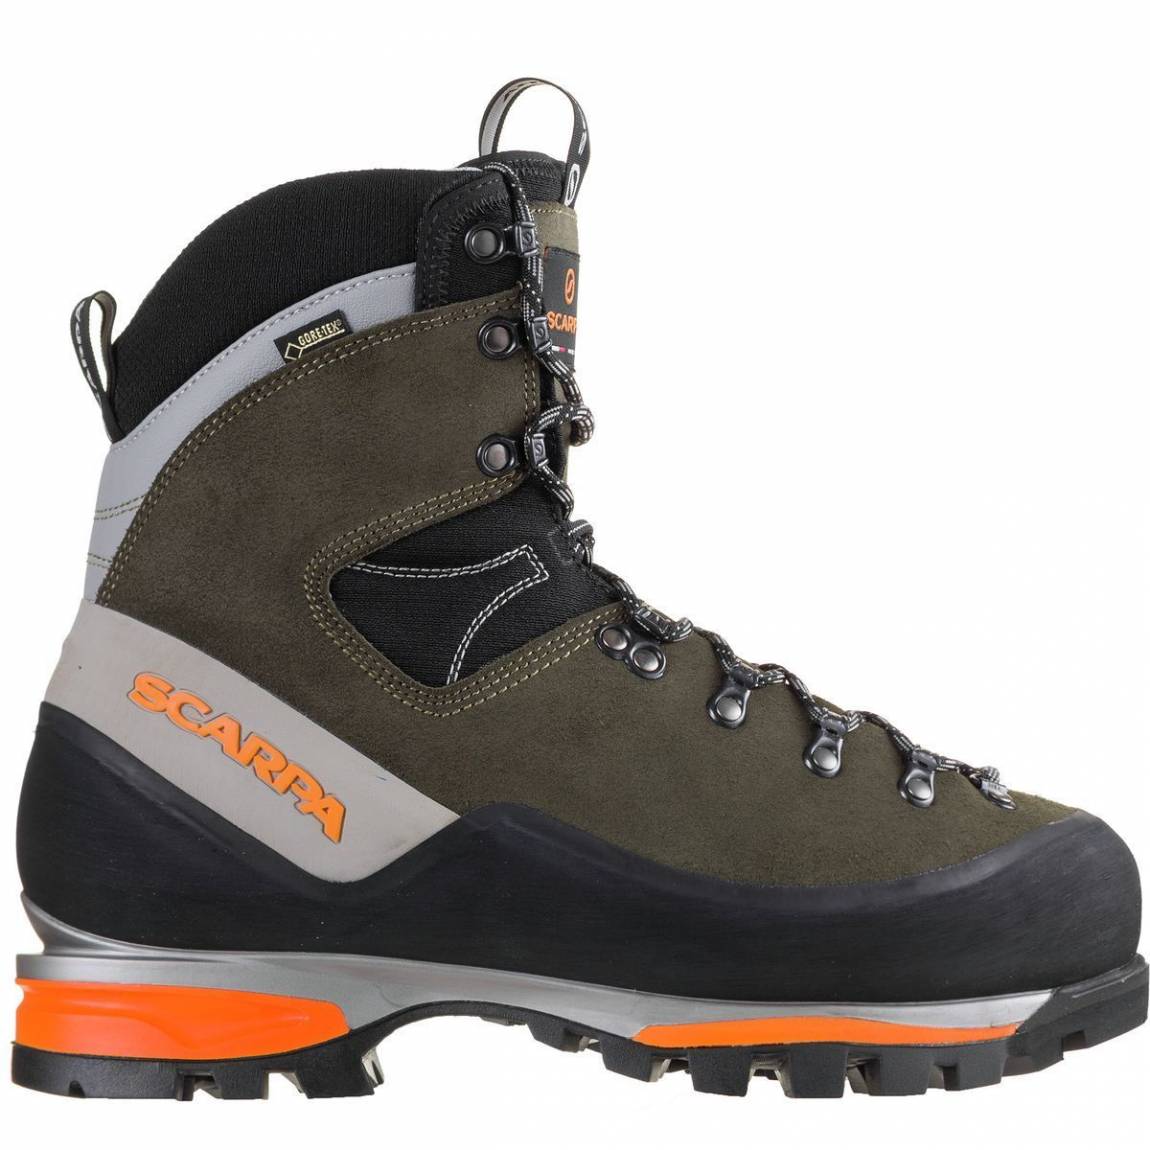 best 4 season mountaineering boots